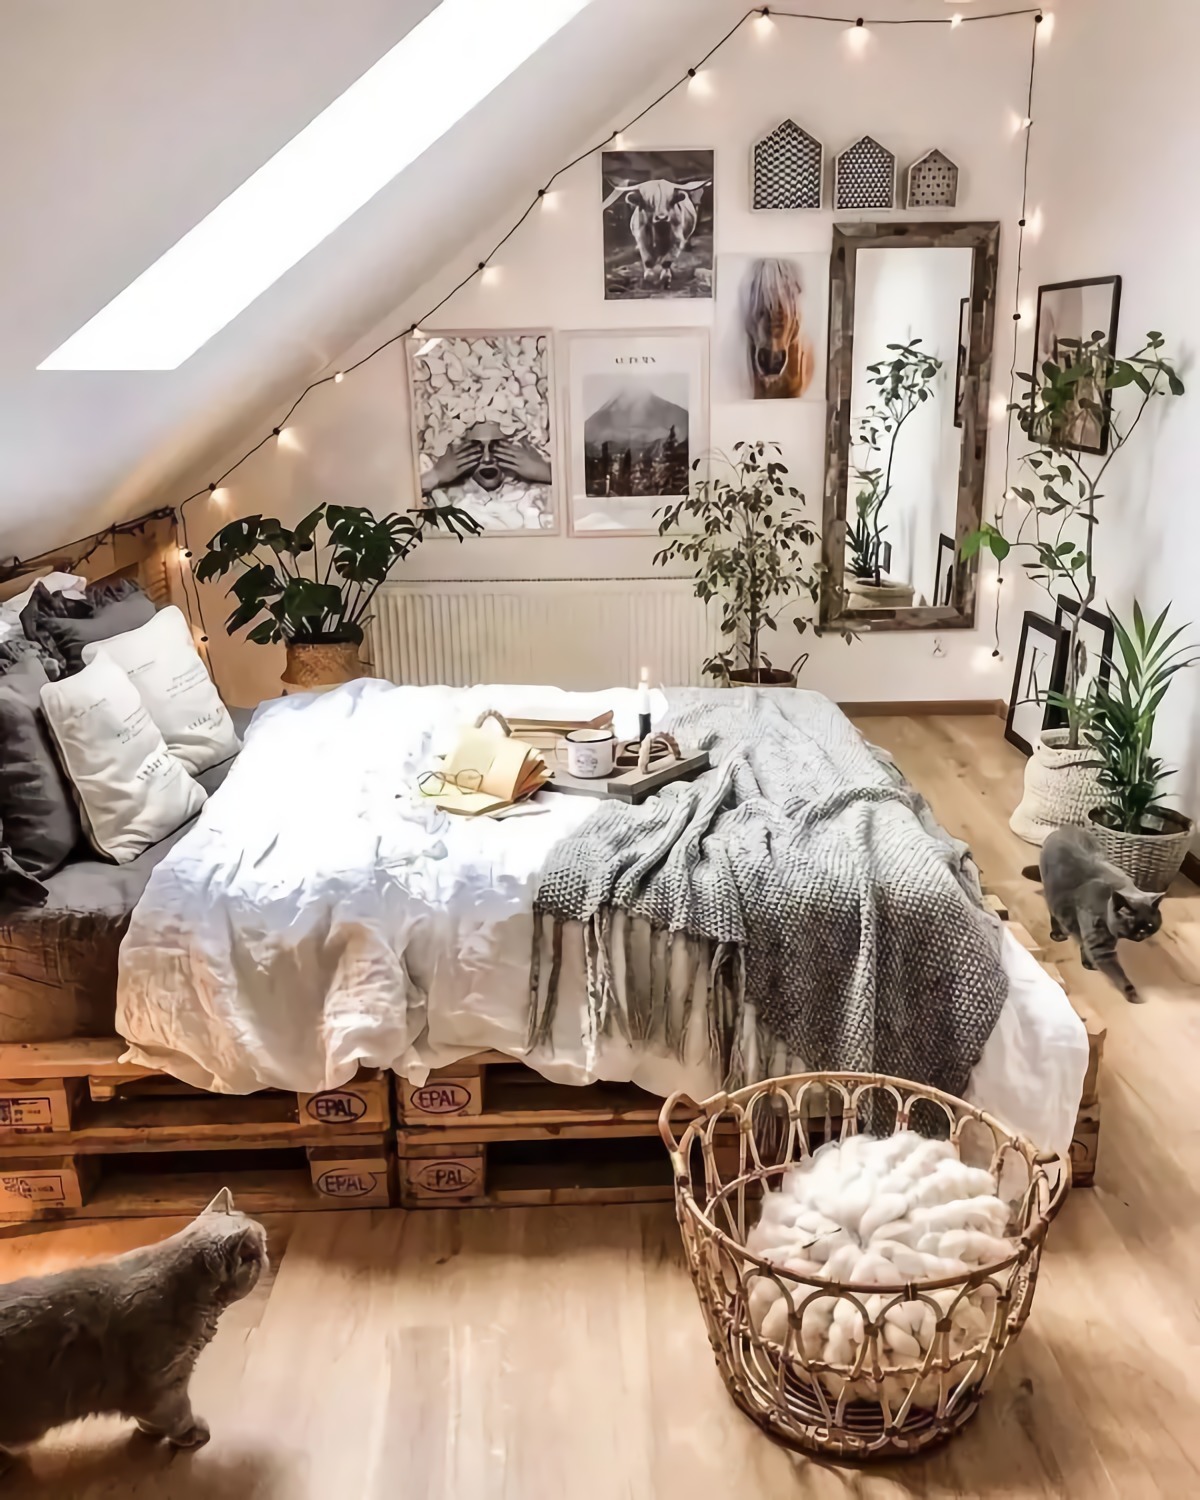 welche gardinen lassen den raum grosser wirken kleines schlafzimmer effektiv einrichten schlaftimmer mit dachsraege bilder an der wand graue katze